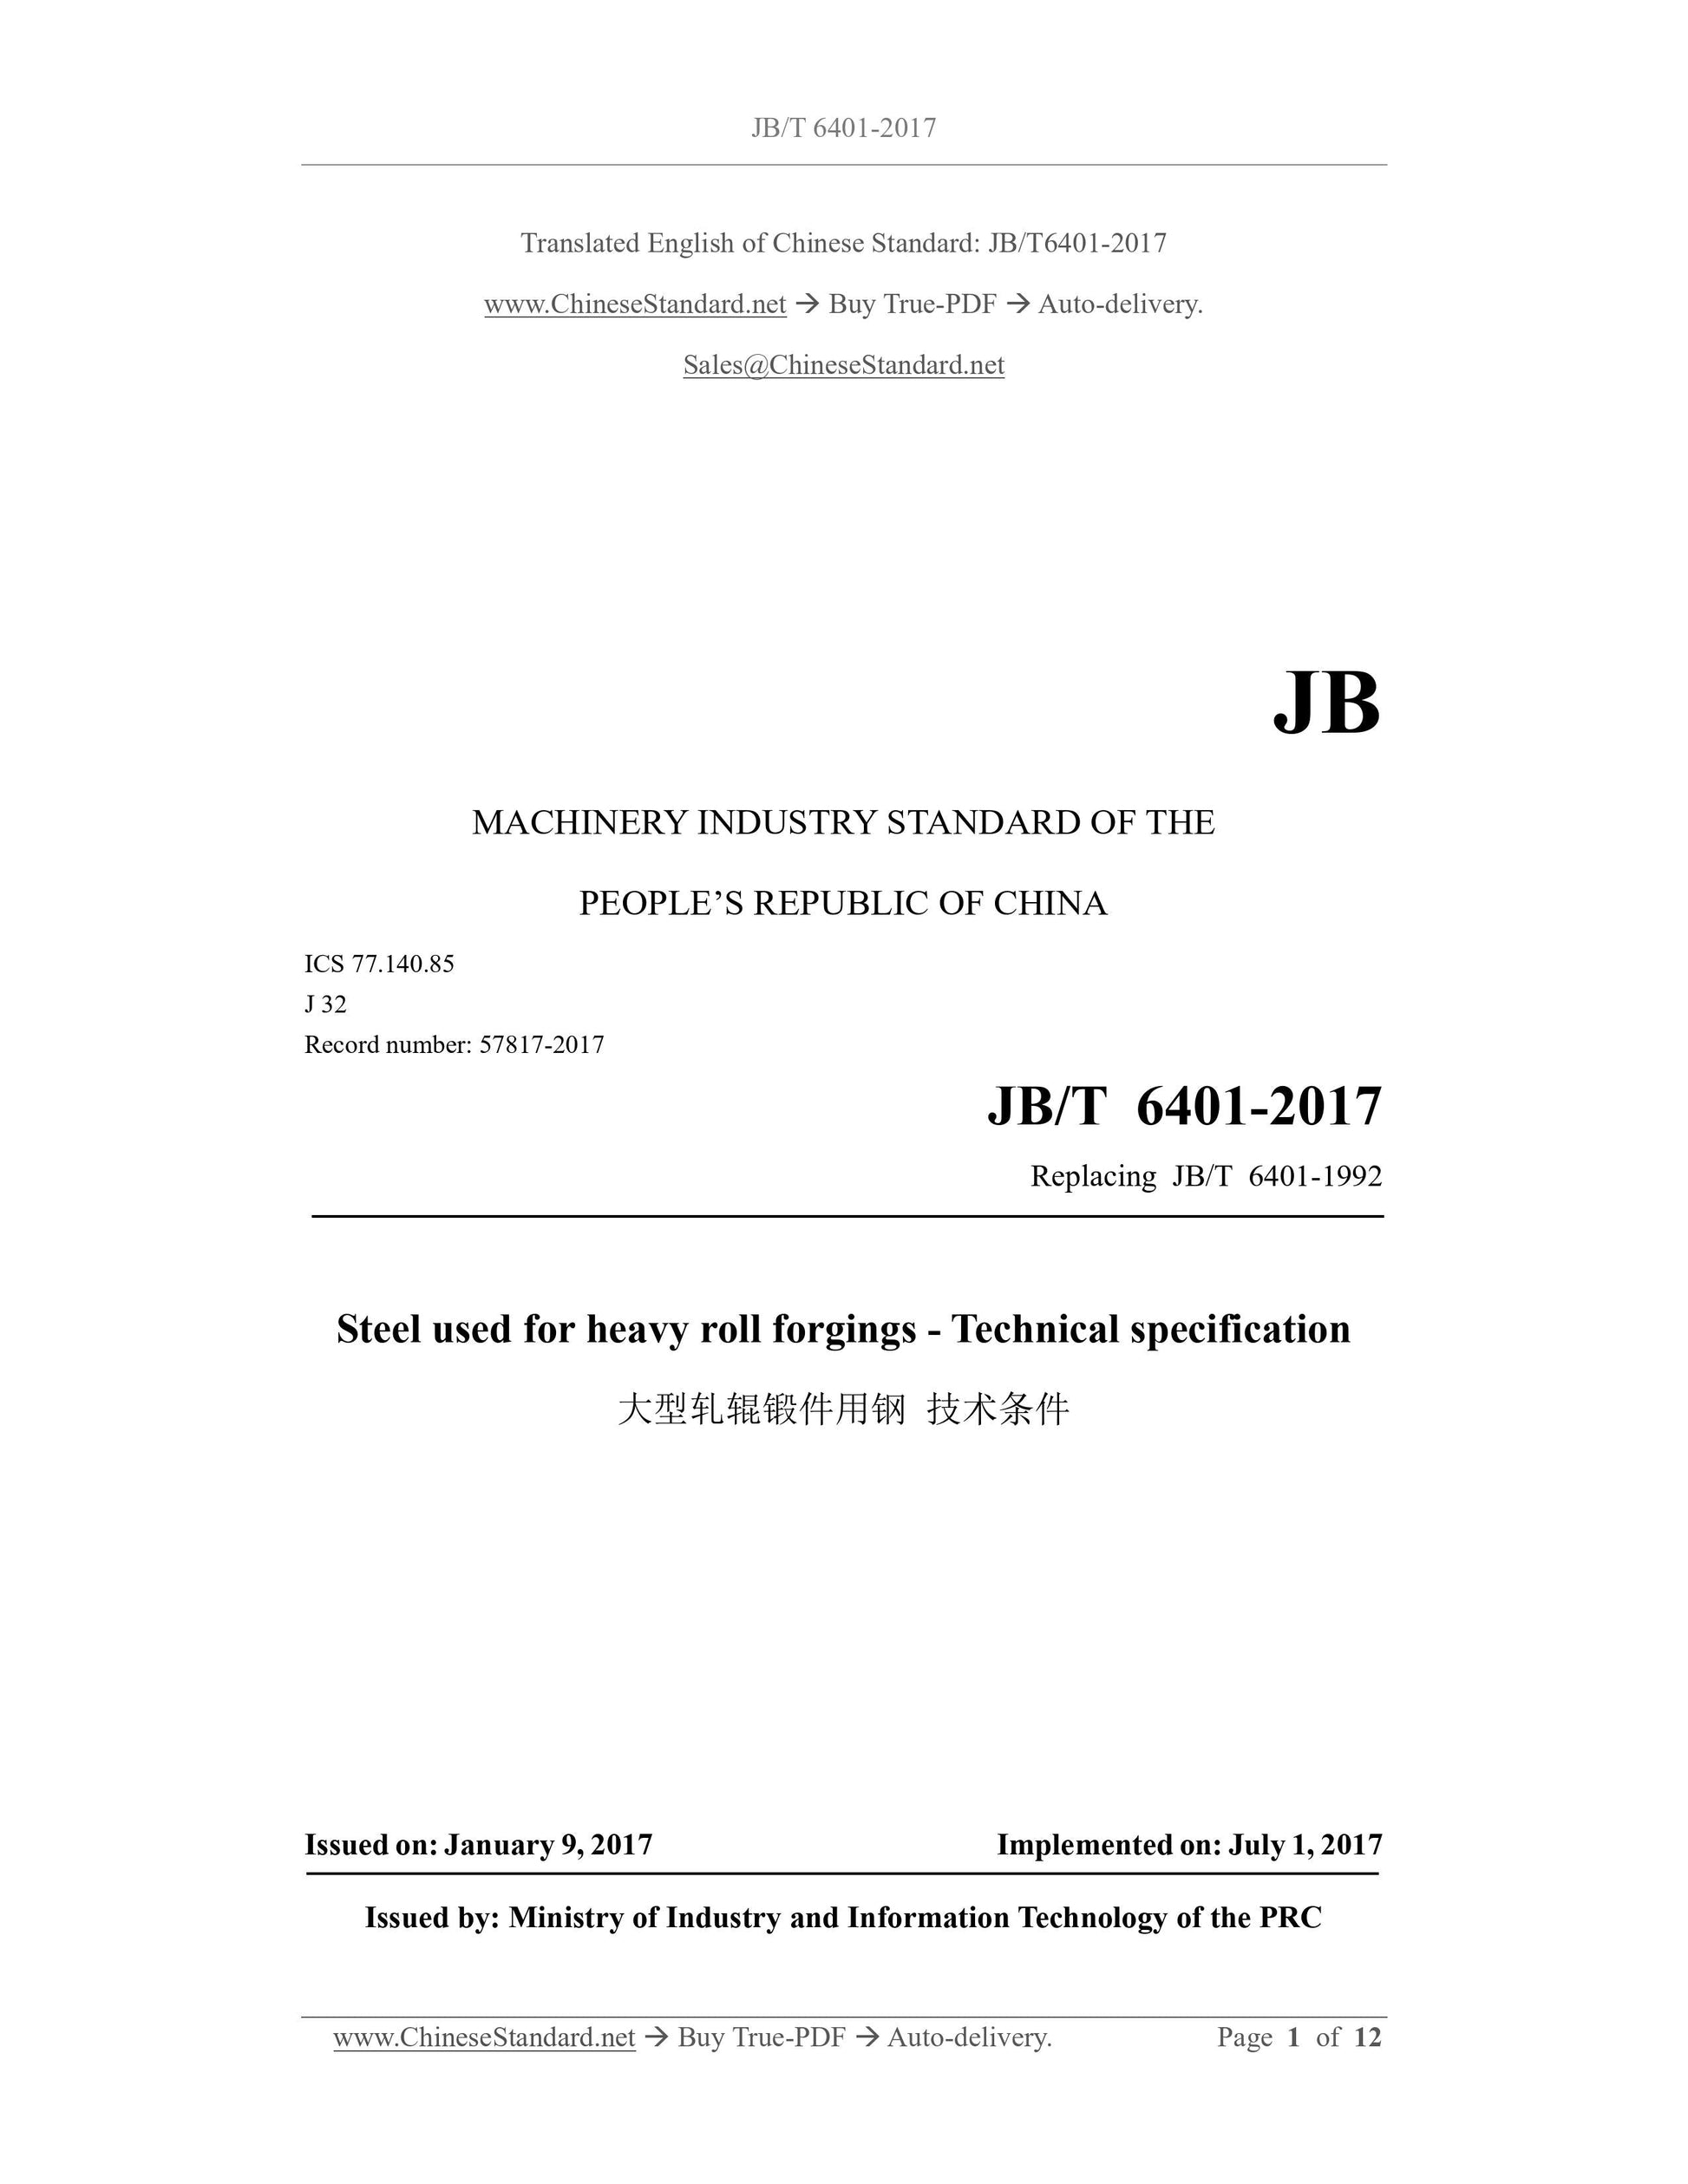 JB/T 6401-2017 Page 1